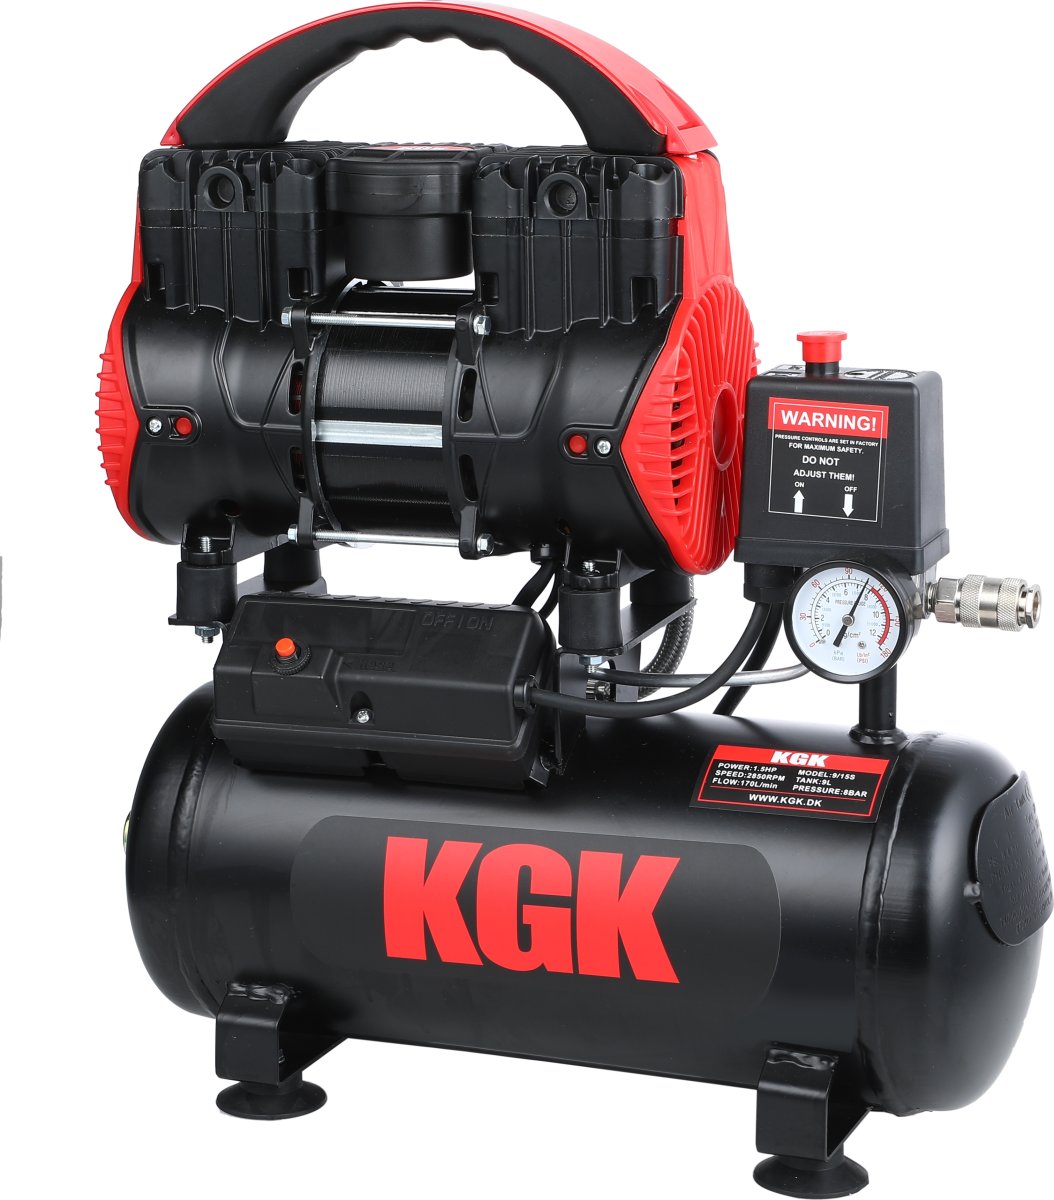 KGK 9/15 S kompressor